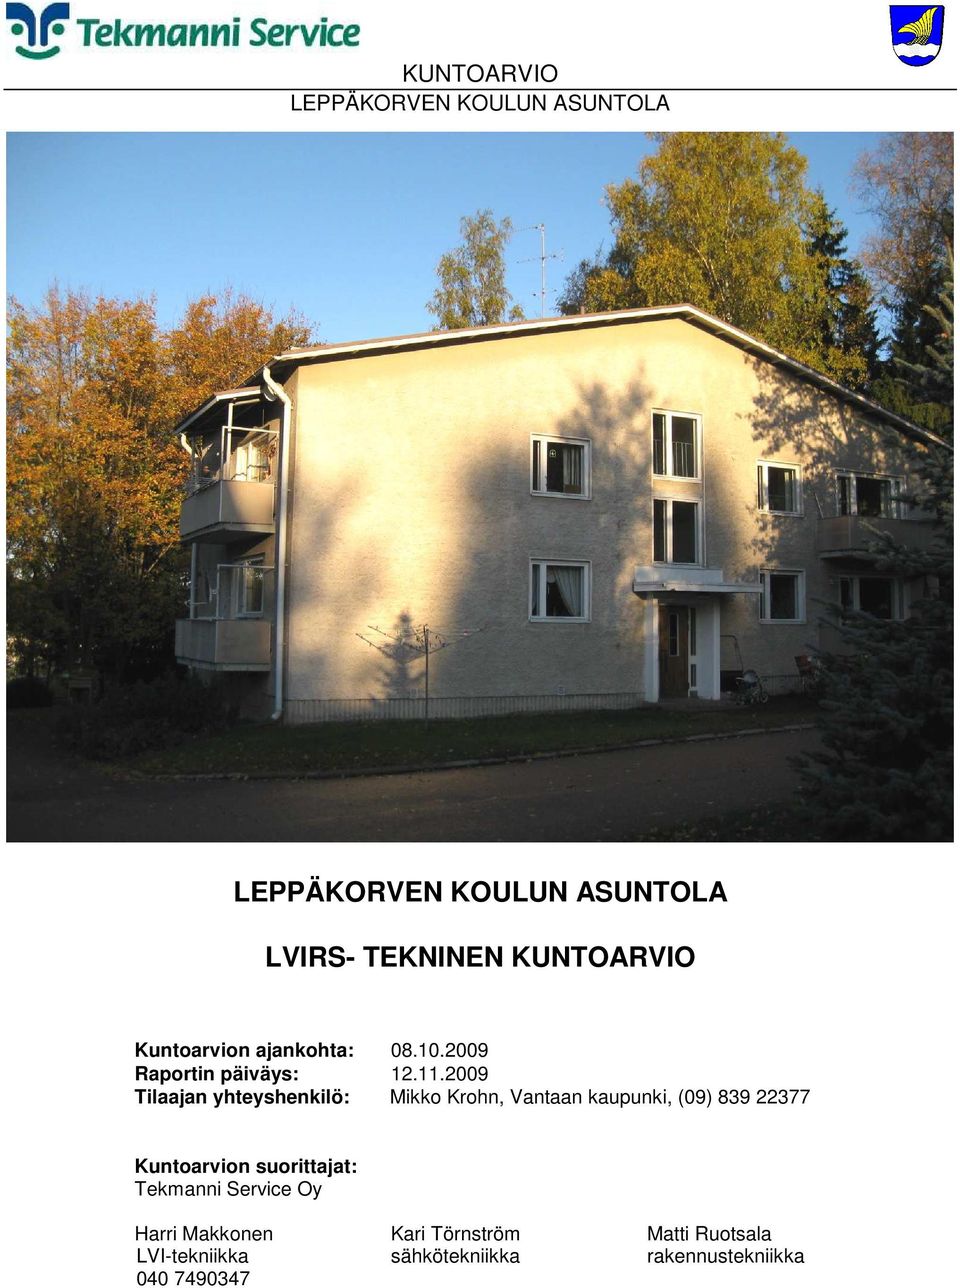 2009 Tilaajan yhteyshenkilö: Mikko Krohn, Vantaan kaupunki, (09) 839 22377